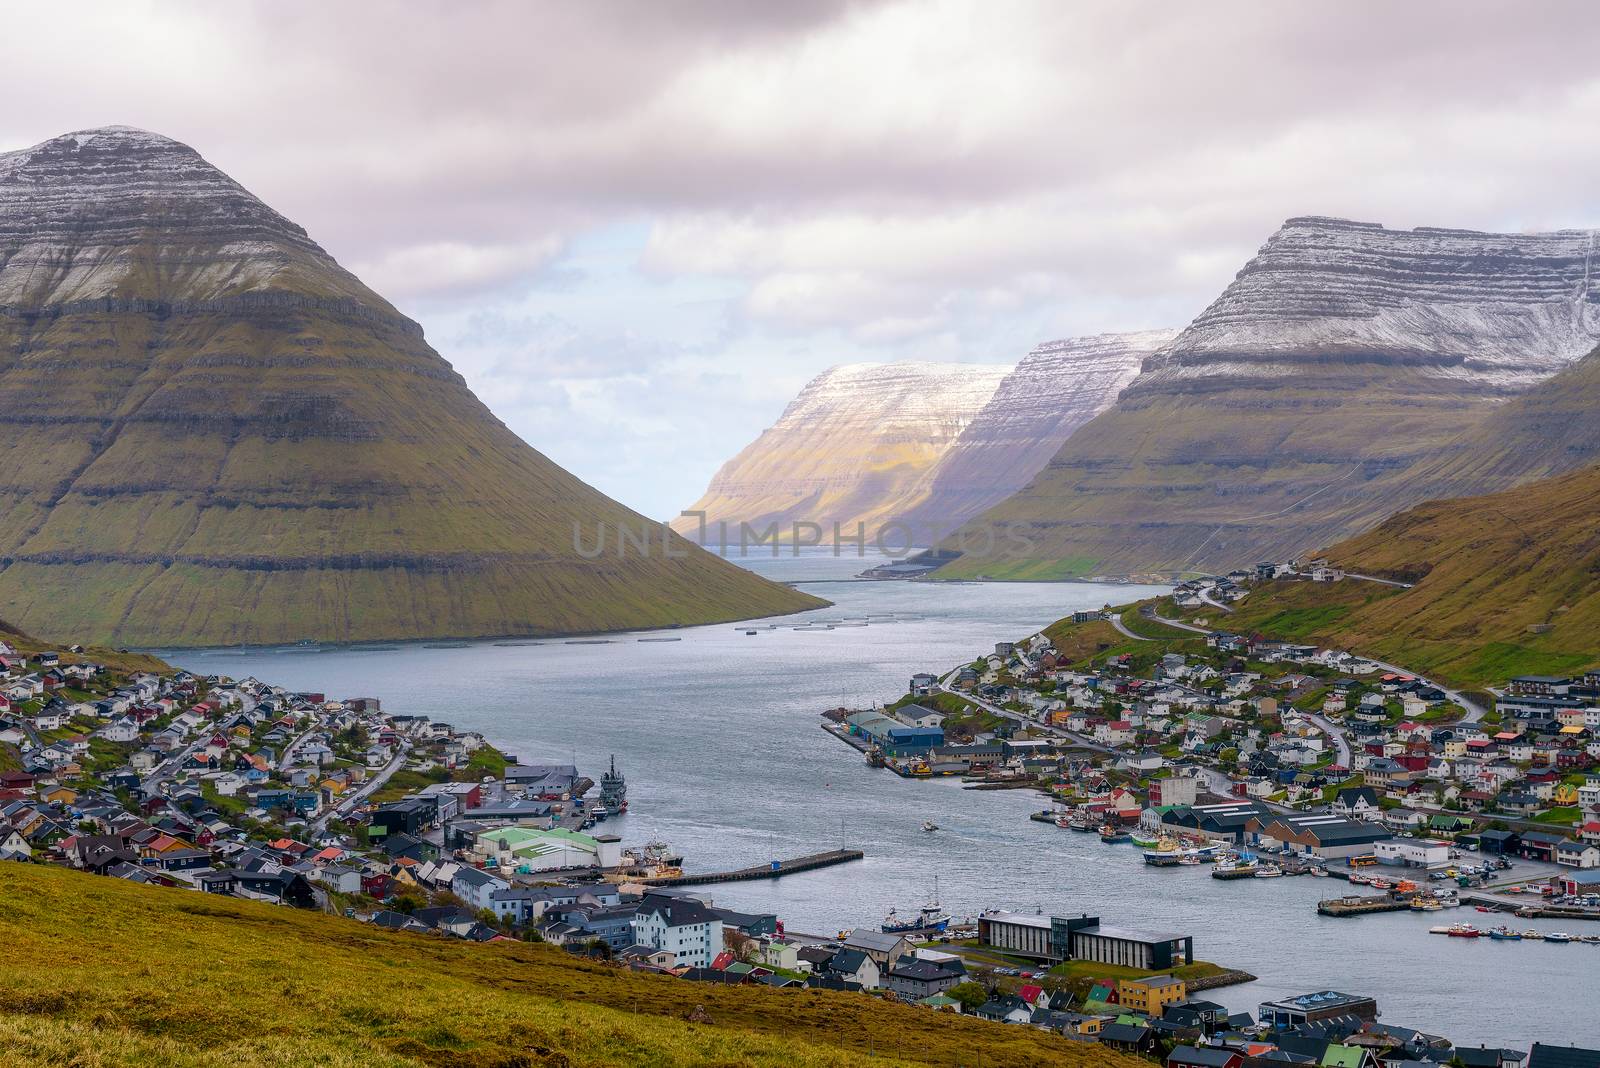 City of Klaksvik on Faroe Islands, Denmark by nickfox